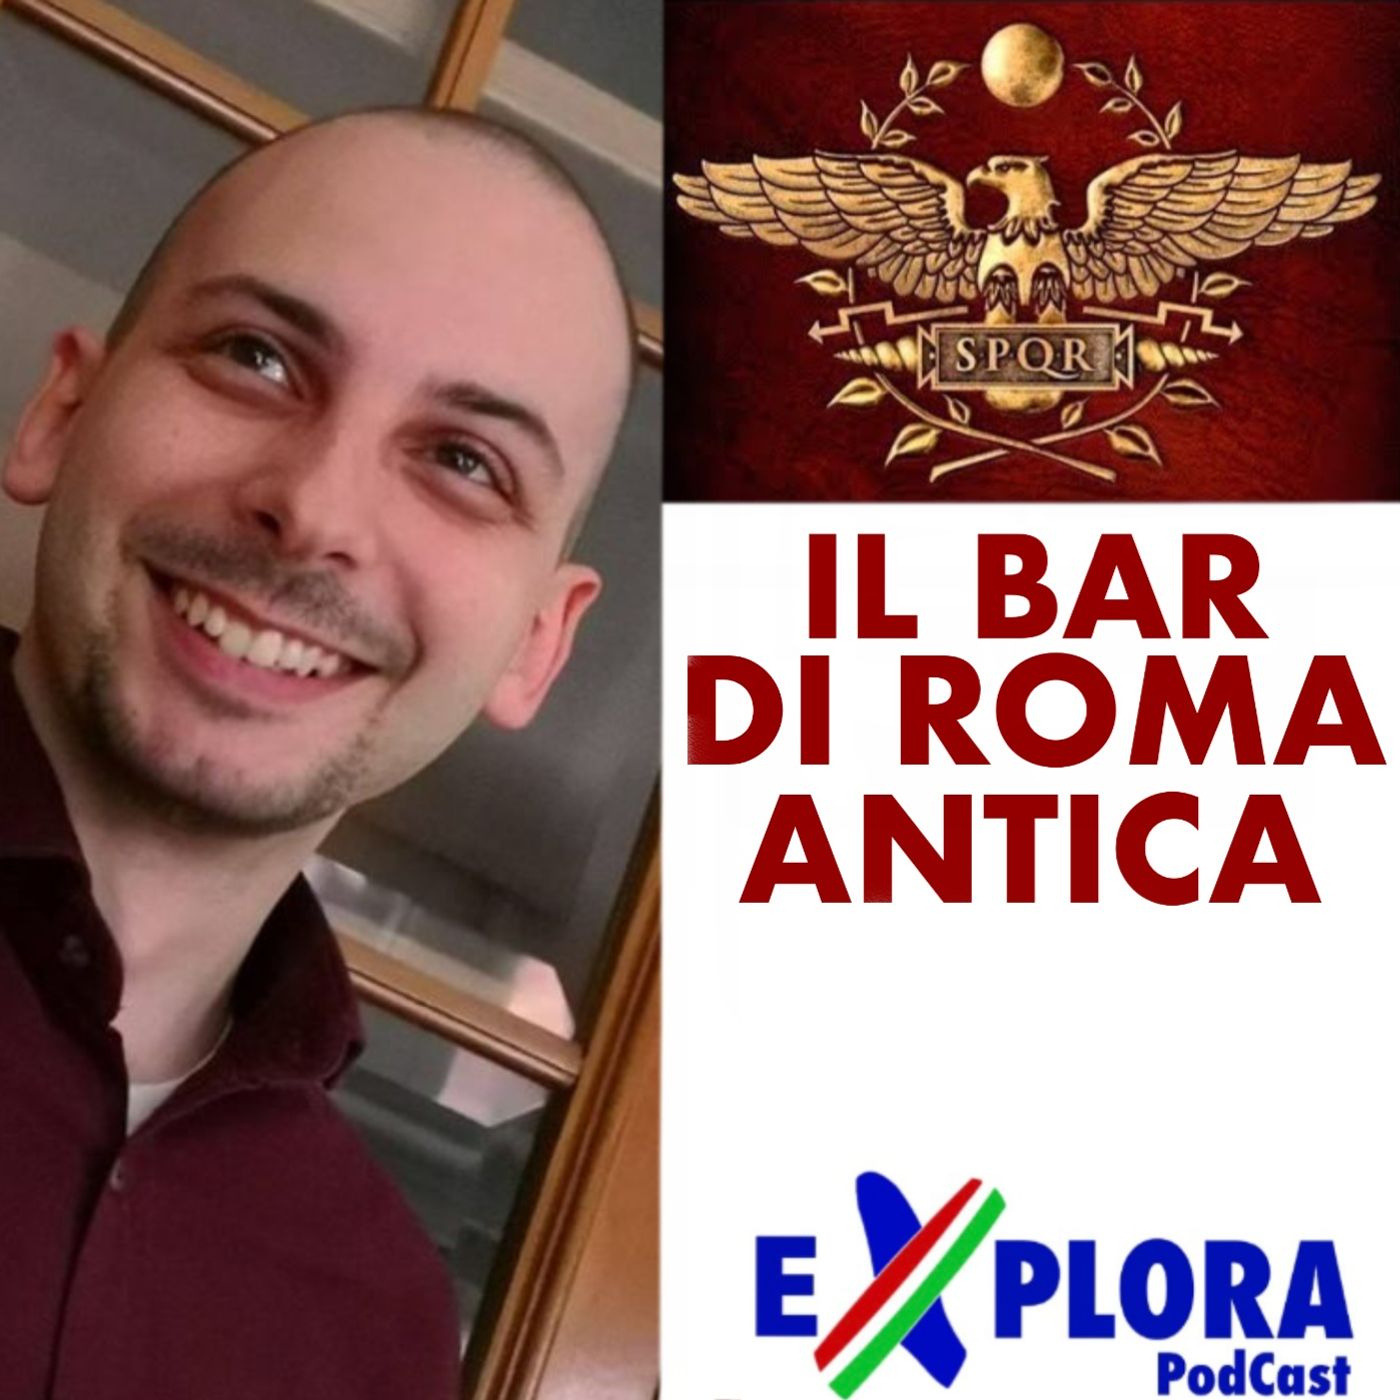 Chiacchiere:Ep.23 con Roberto Trizio del Bar di Roma Antica, Il Viaggio della Storia